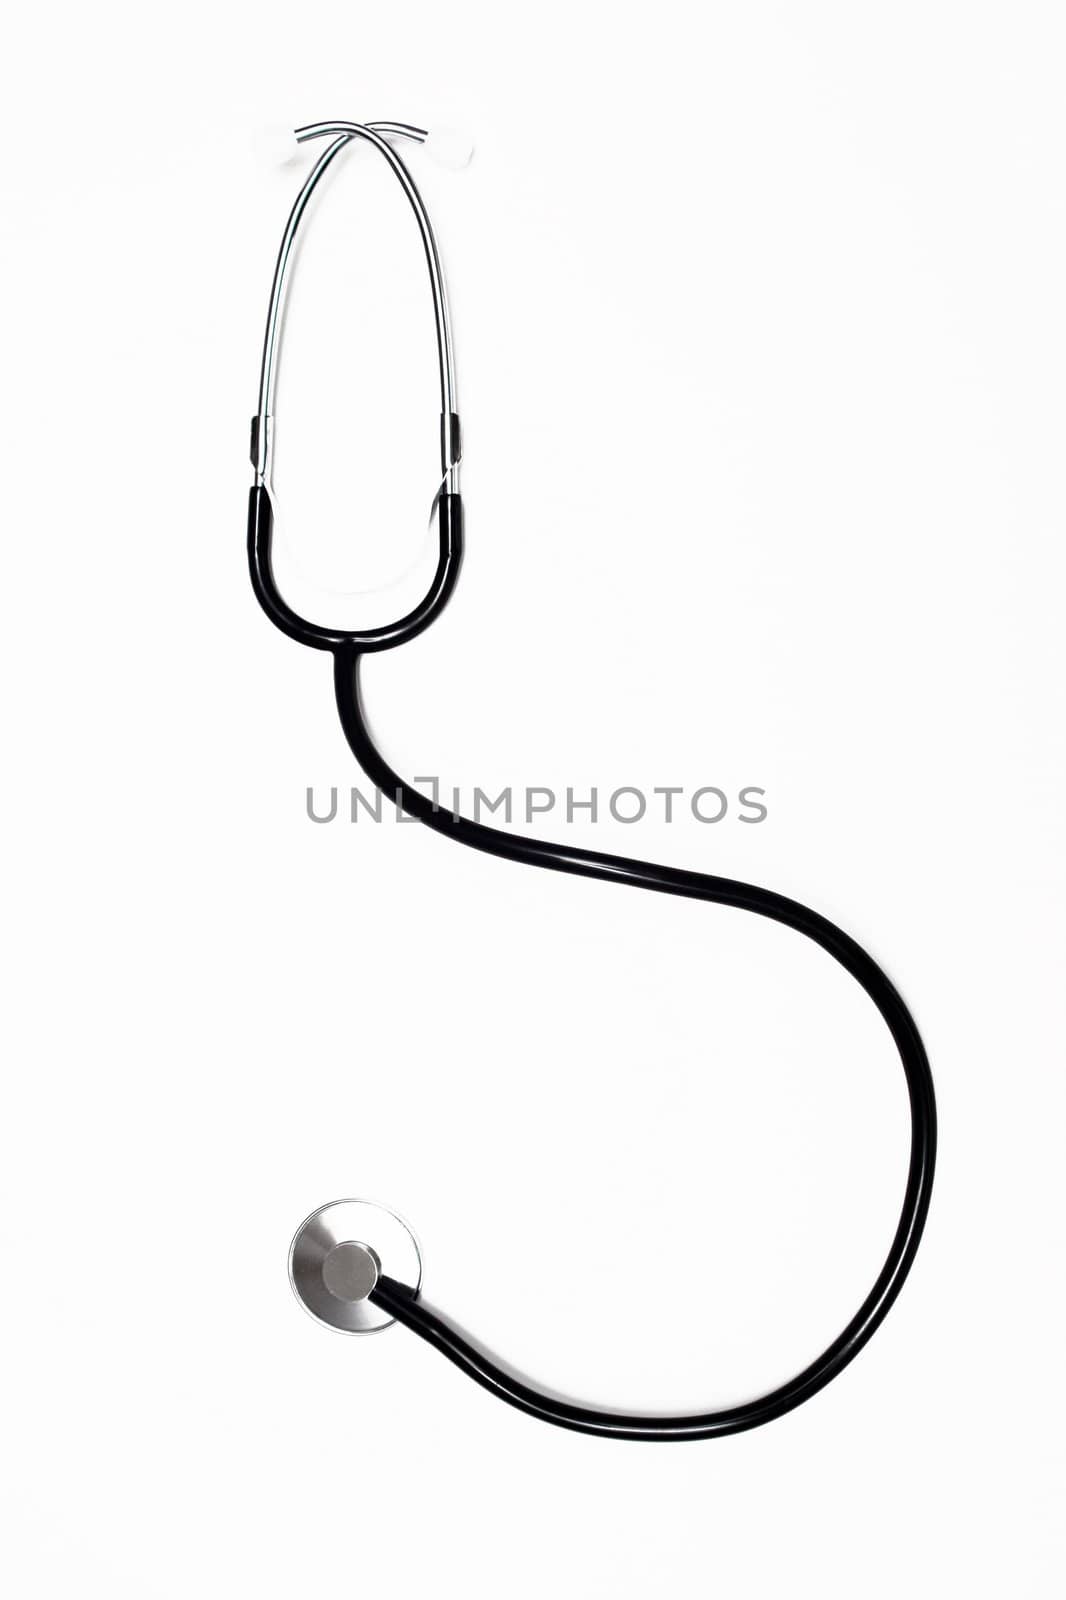 Stethoscope by Yaurinko